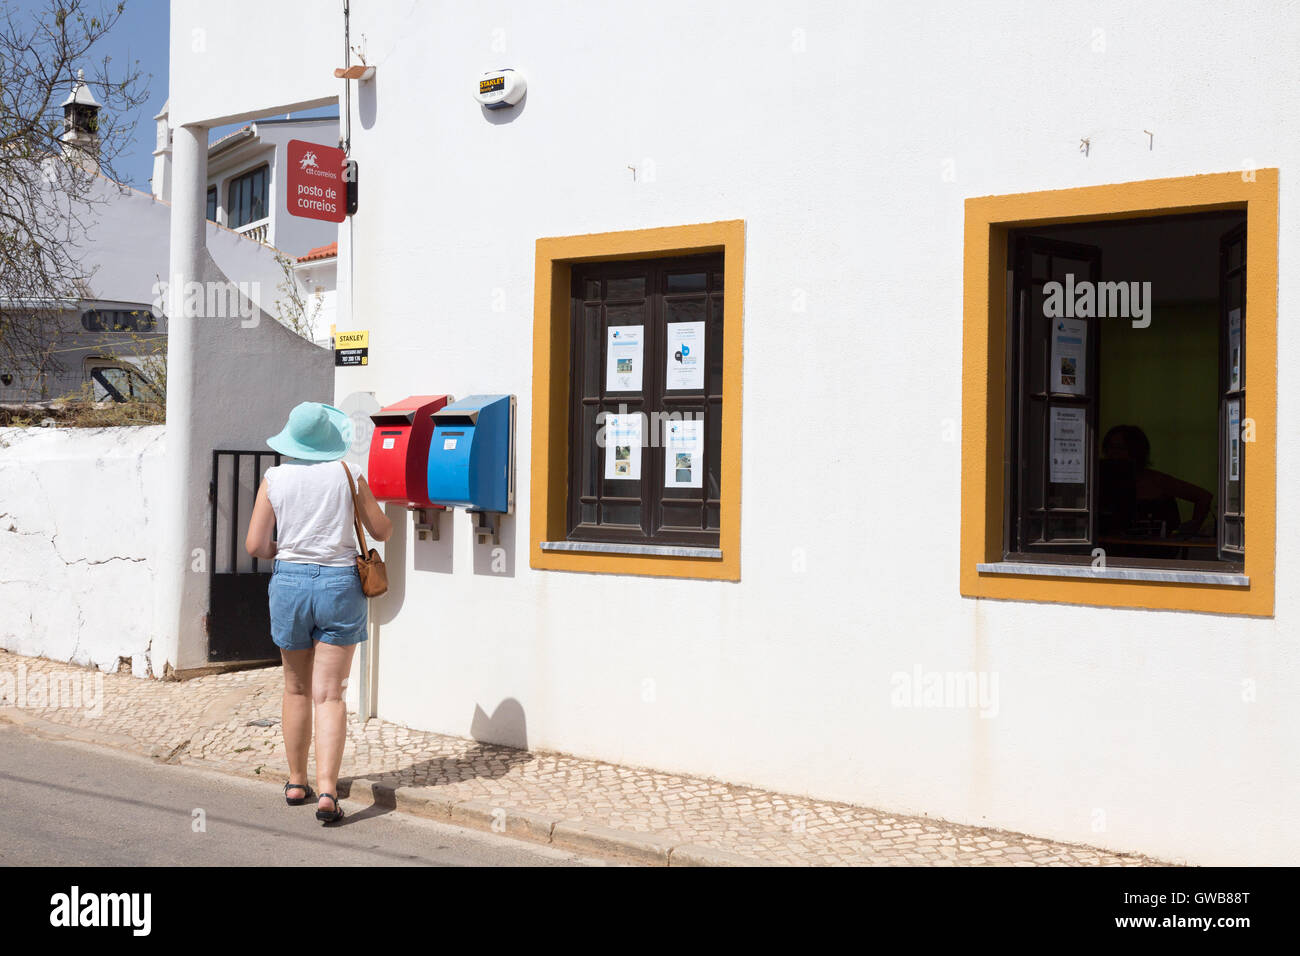 Bureau de poste portugal Banque de photographies et d'images à haute  résolution - Alamy